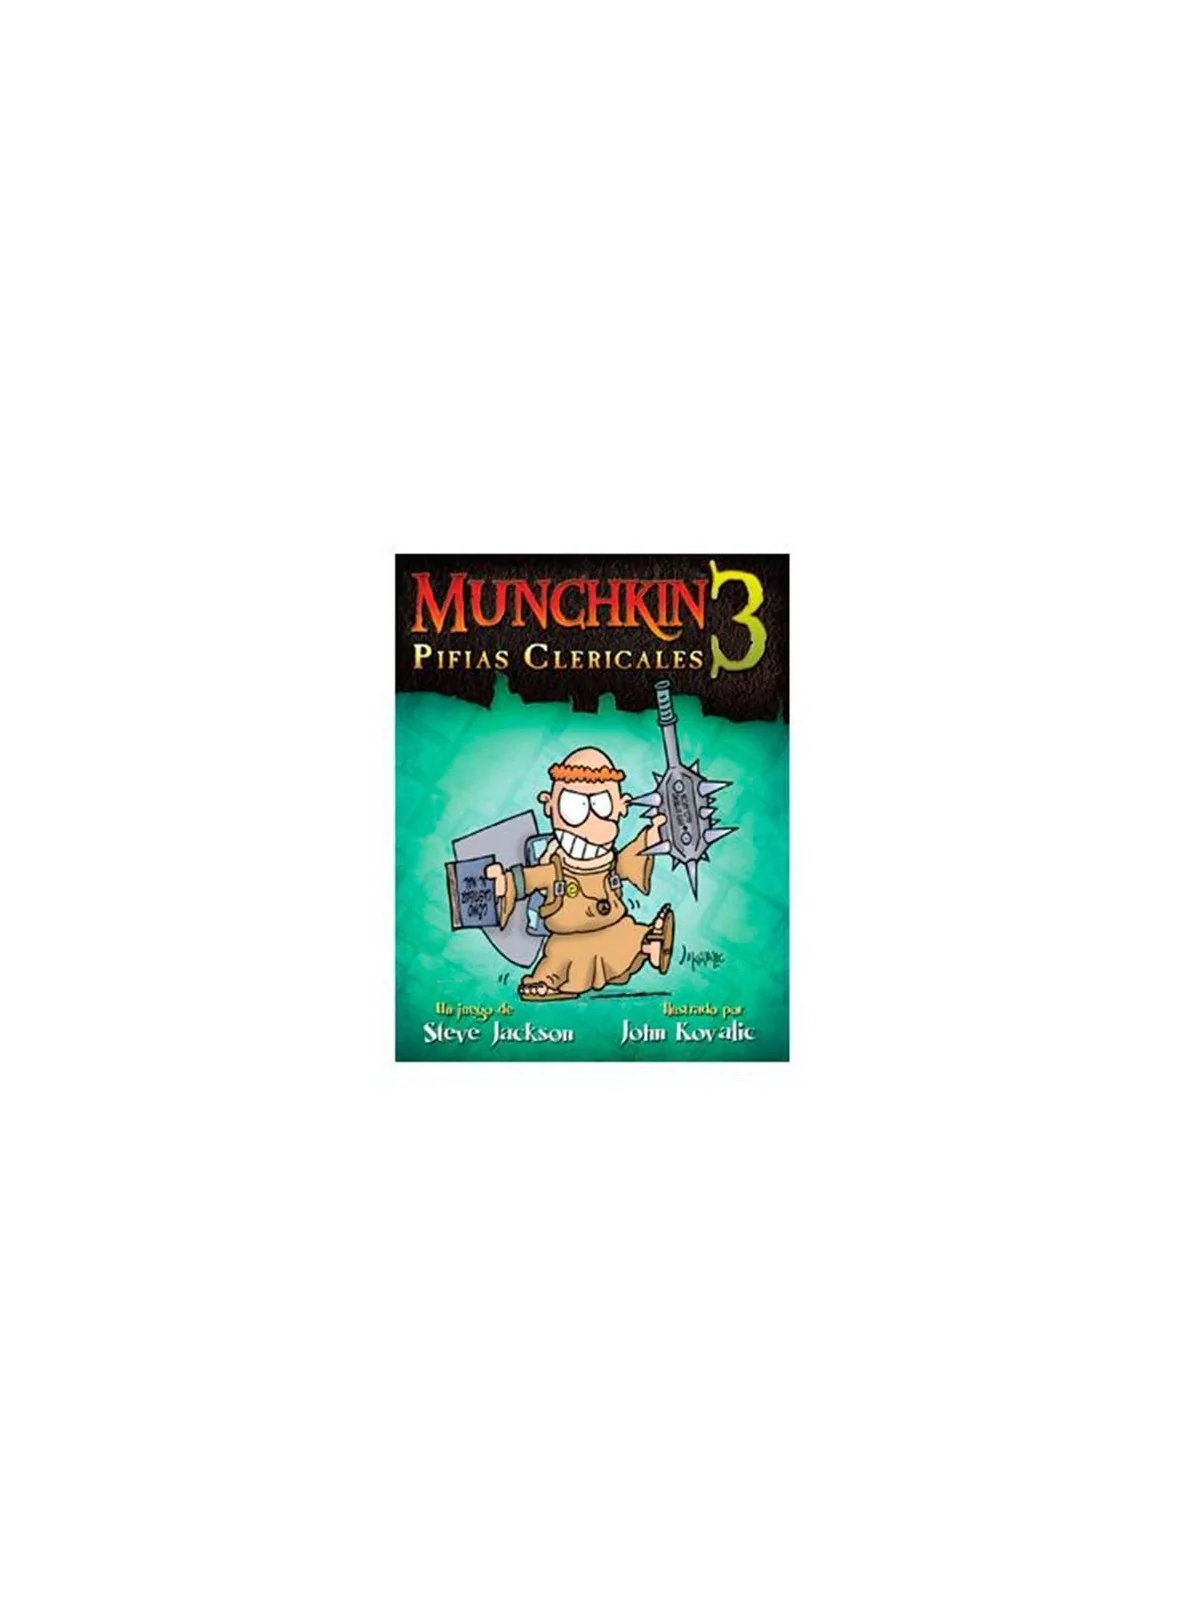 Comprar Munchkin 3: Pifias Clericales barato al mejor precio 14,39 € d